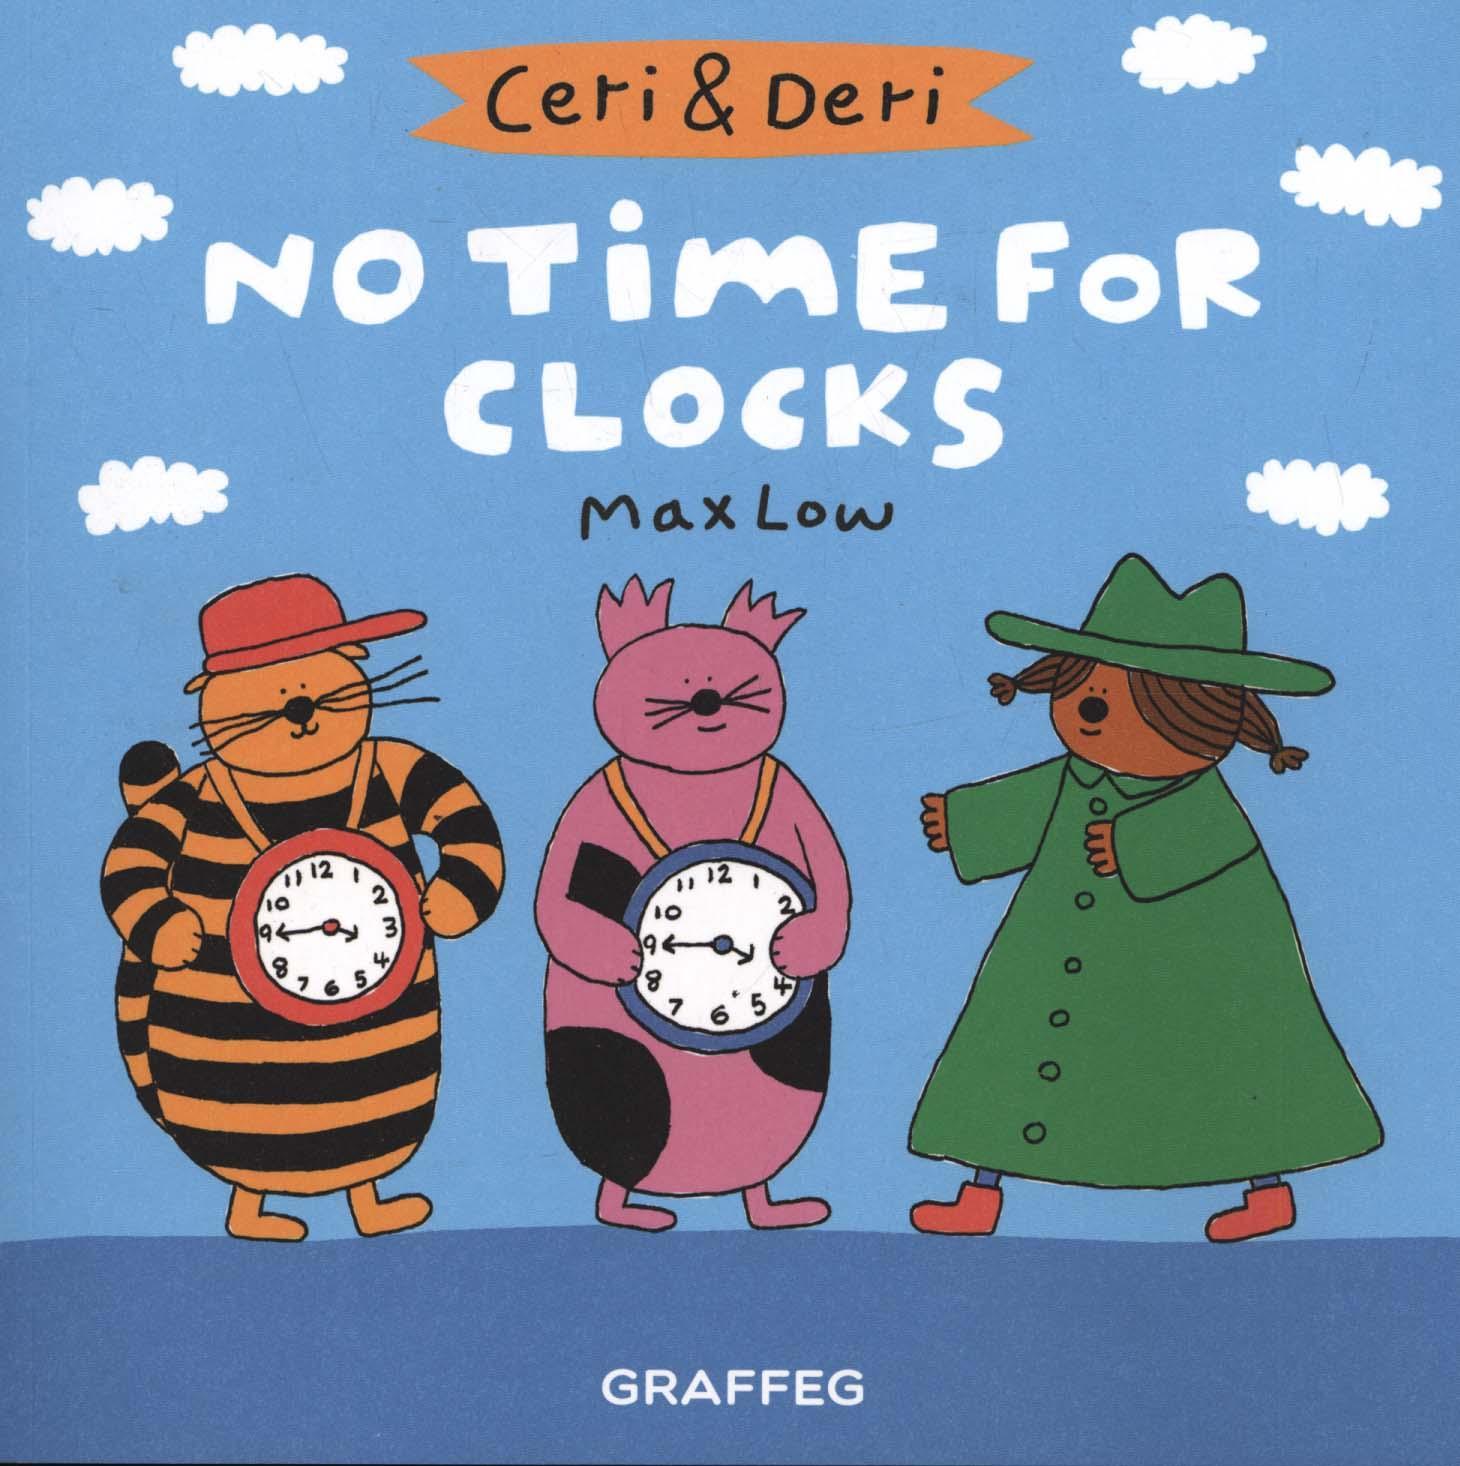 Ceri & Deri: No Time For Clocks